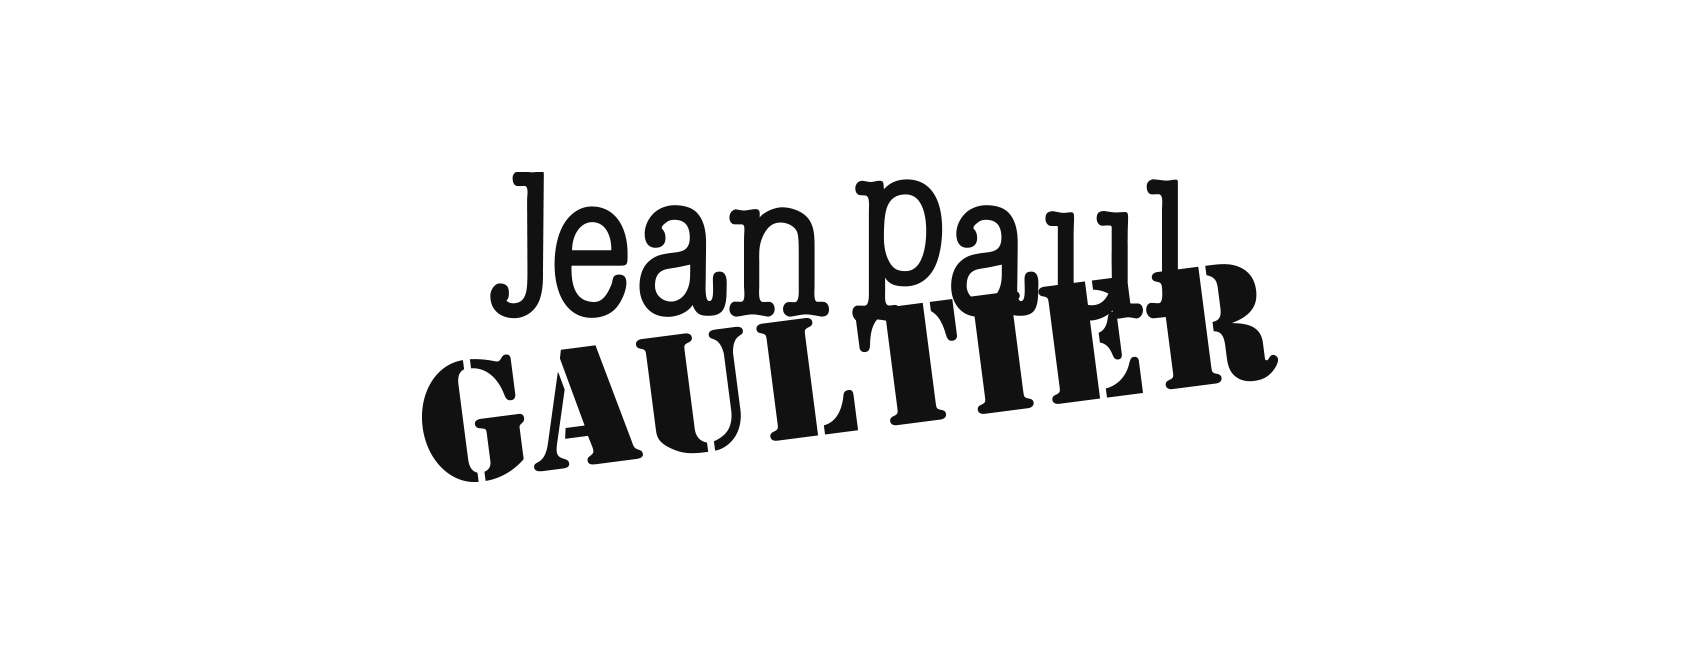 Jean-Paul-Gaultier